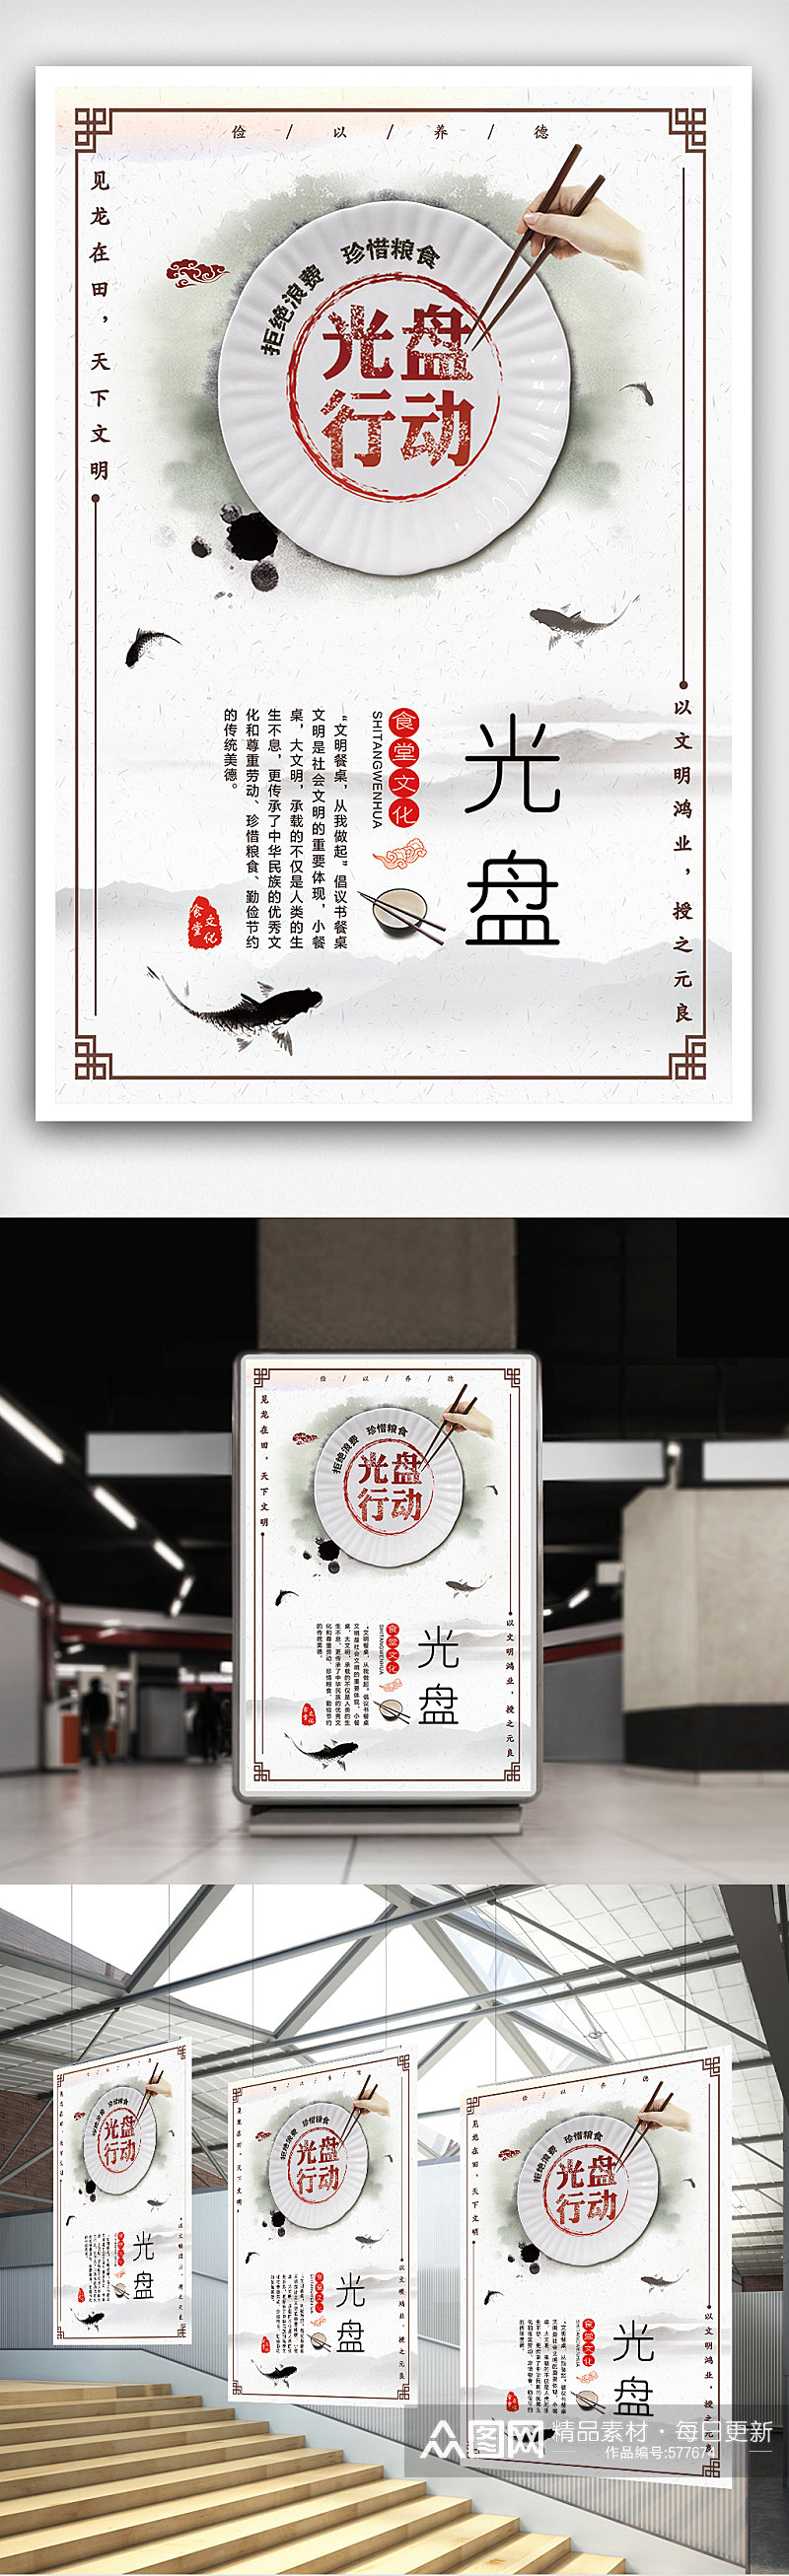 大气简约中国风光盘行动海报模板素材